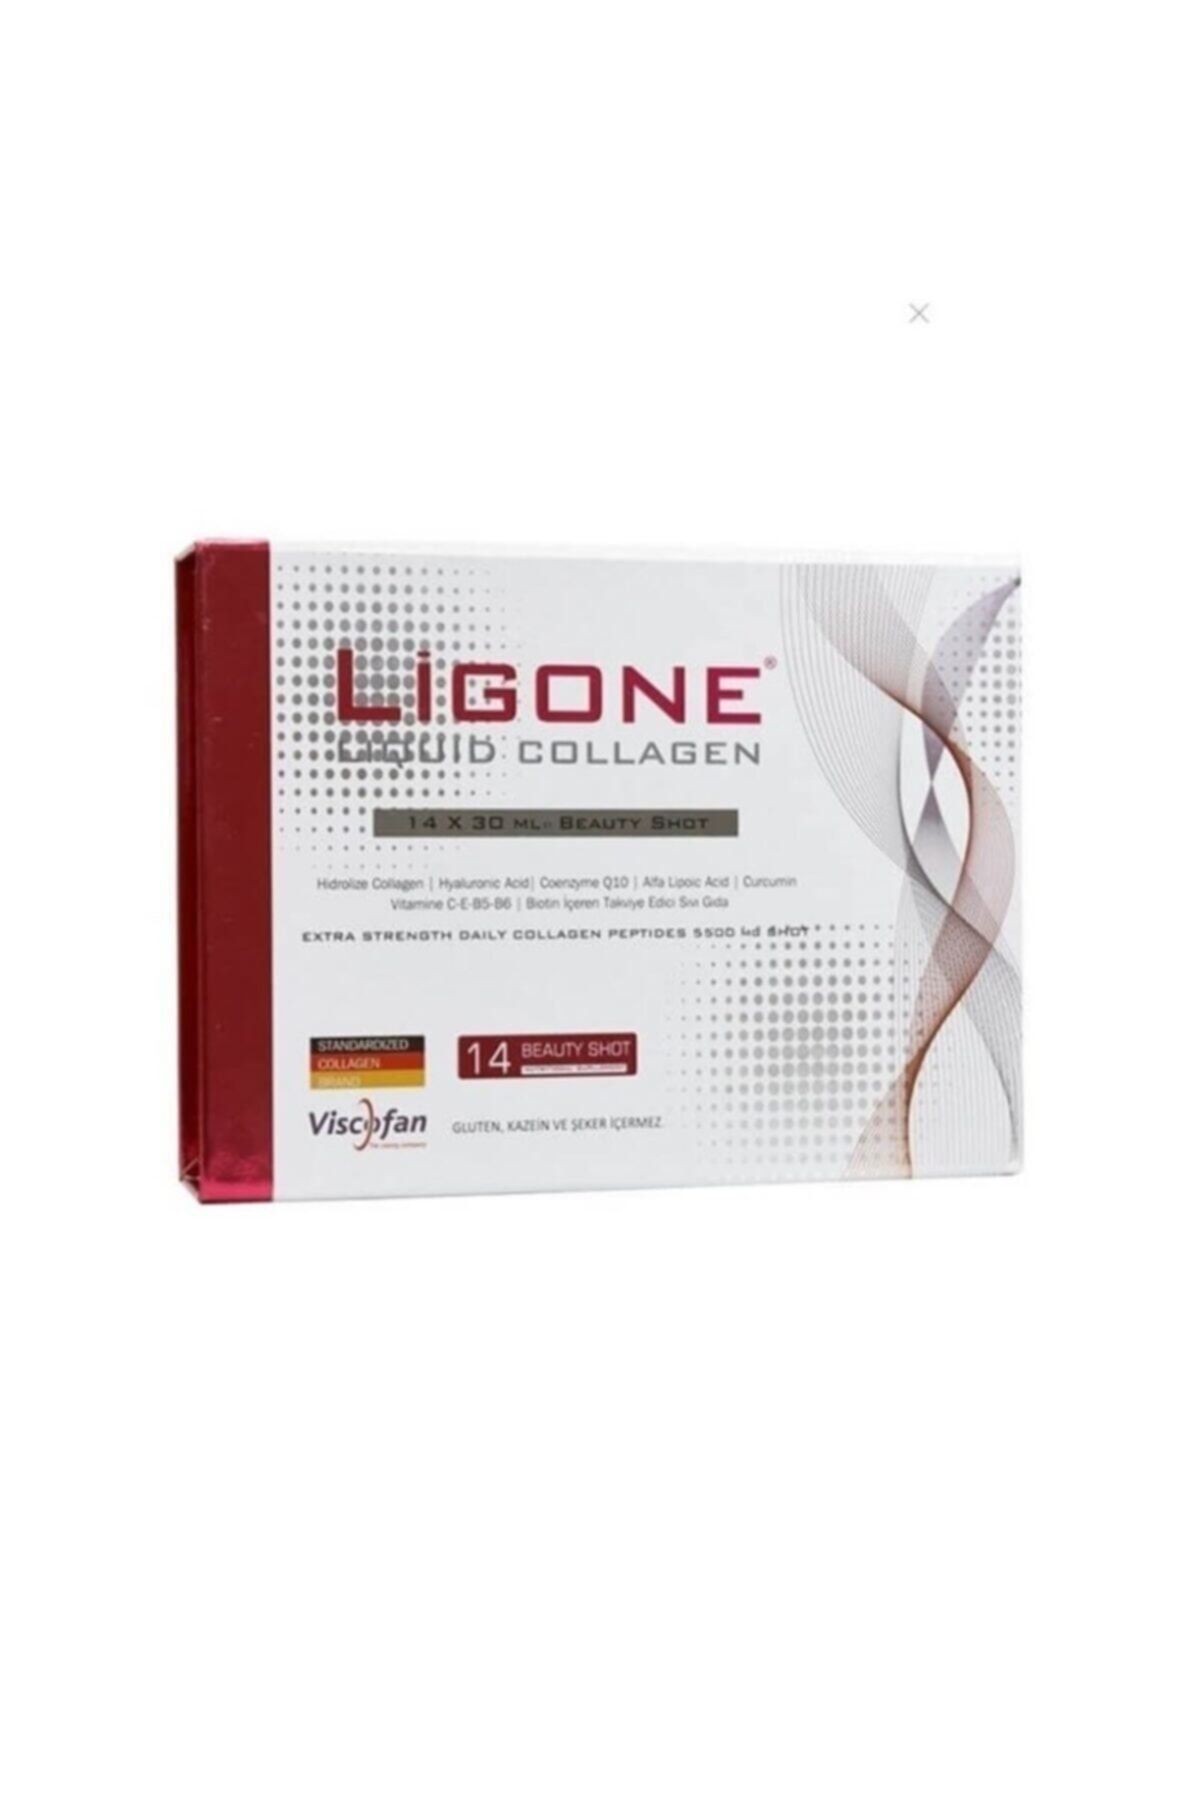 Ligone Liquid Collagen 30 ml X 14 Shot